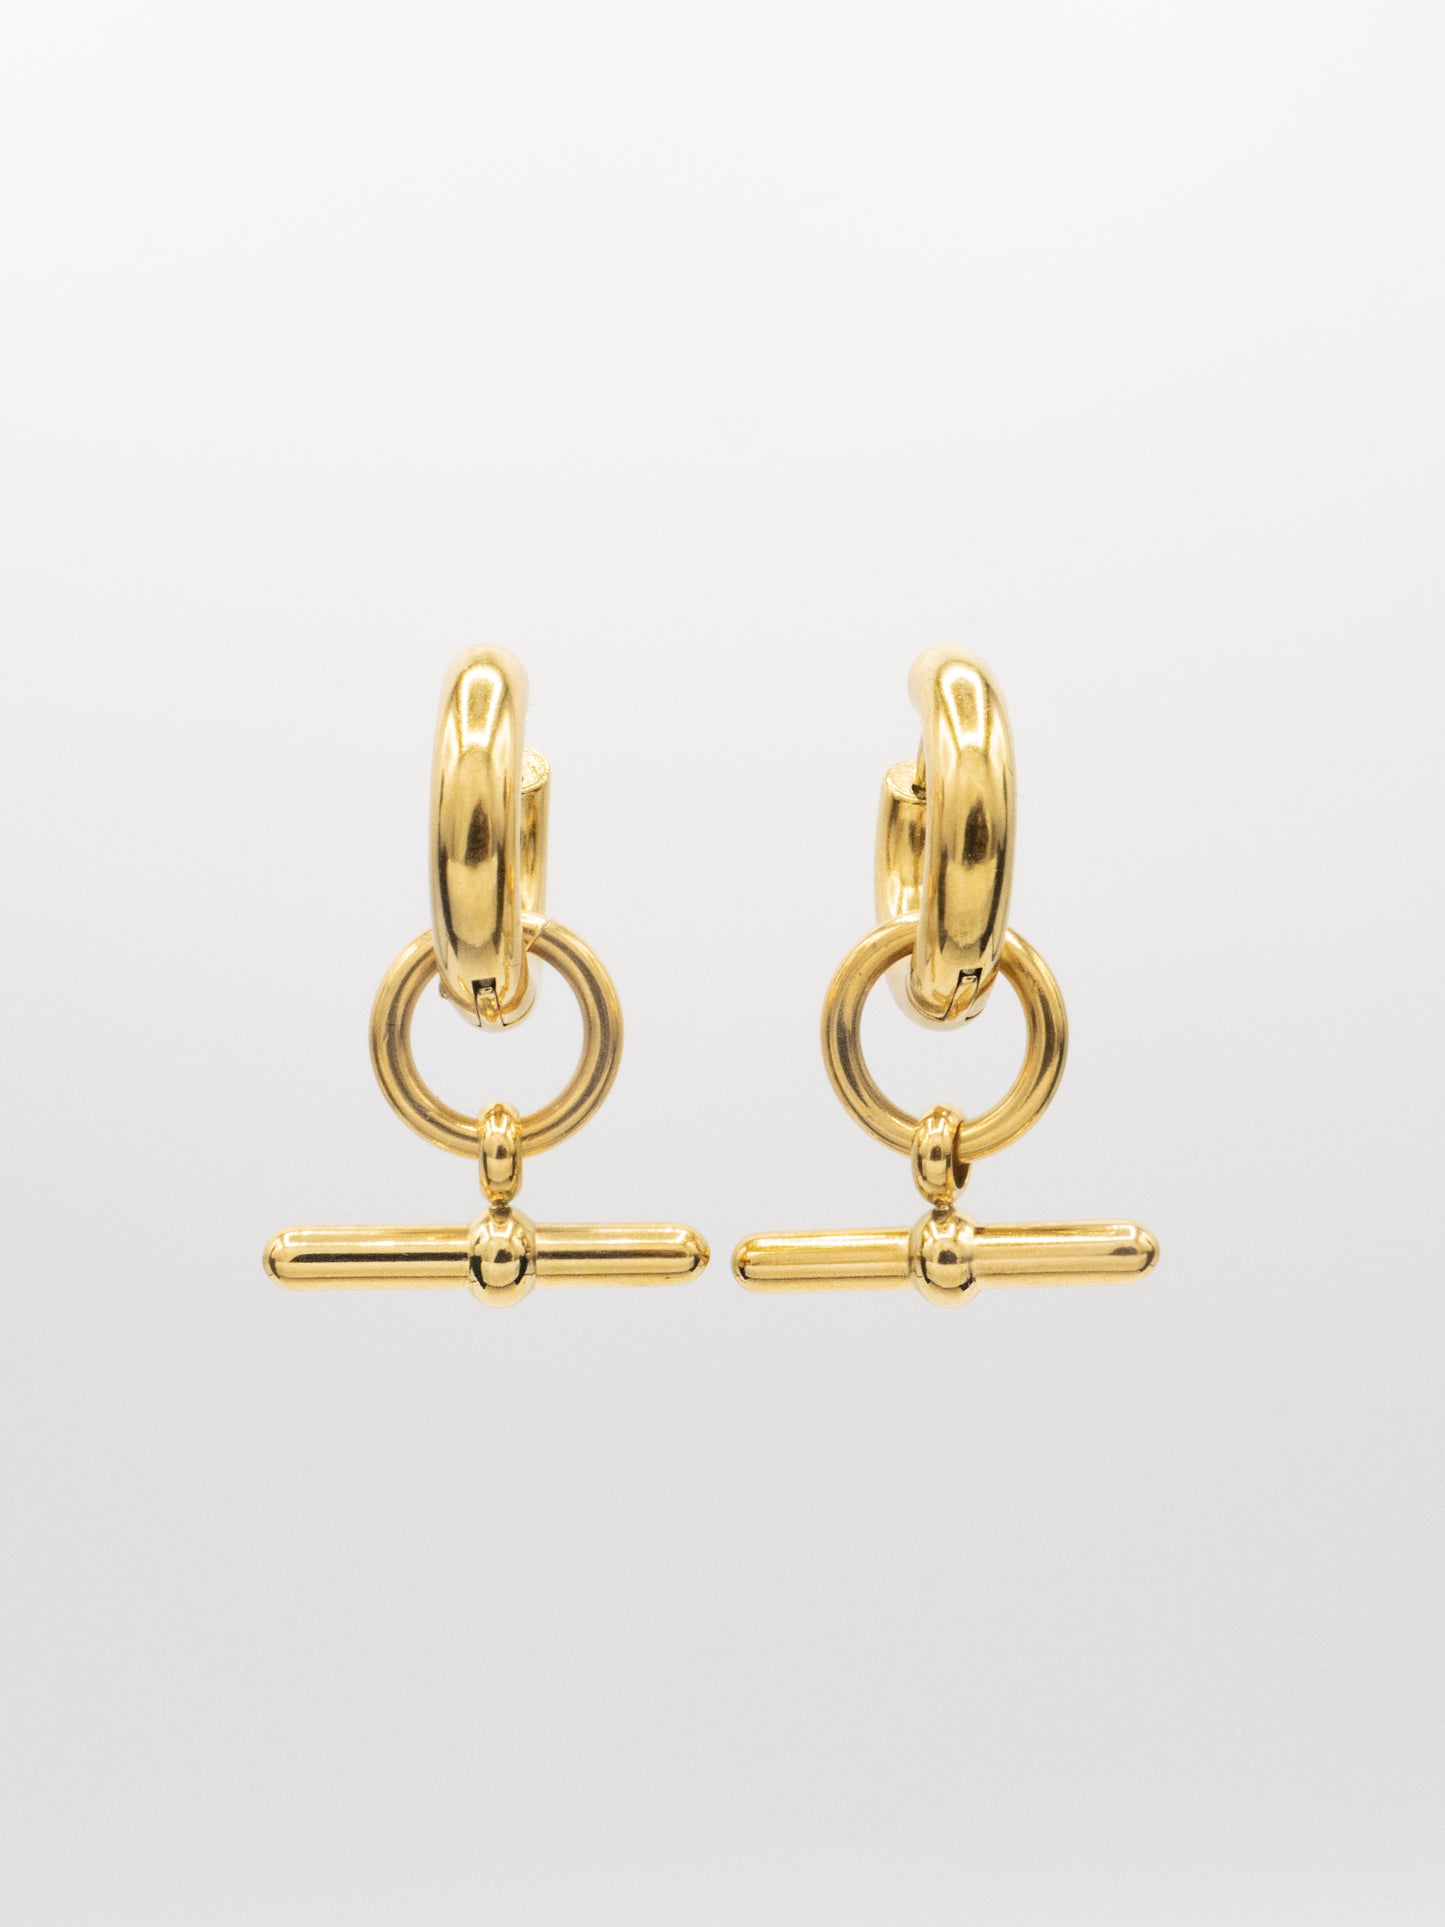 JUNIE HOOPS | 18K Gold - LILÈ - Earring - LILÈ - online jewellery store - jewelry online - affordable jewellery online Australia